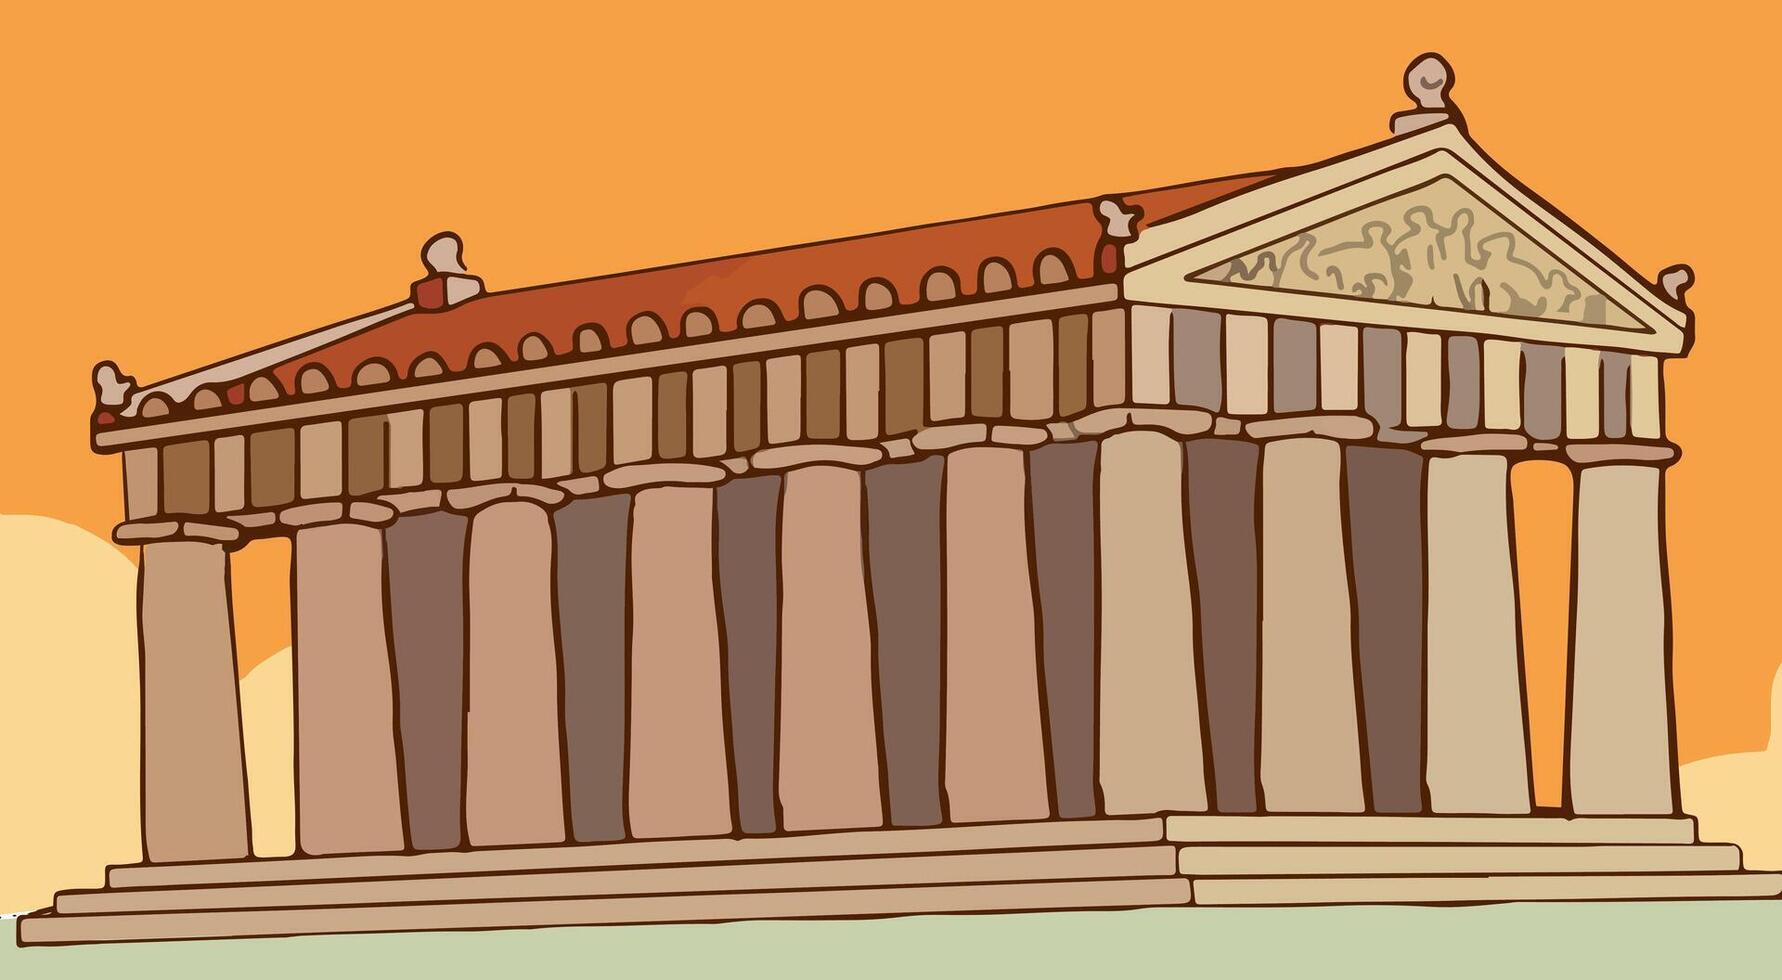 grec et romain temple bâtiment, ancien architecture avec Colonnes et frontons. vecteur dessin animé illustration de ancien palais avec Colonnes